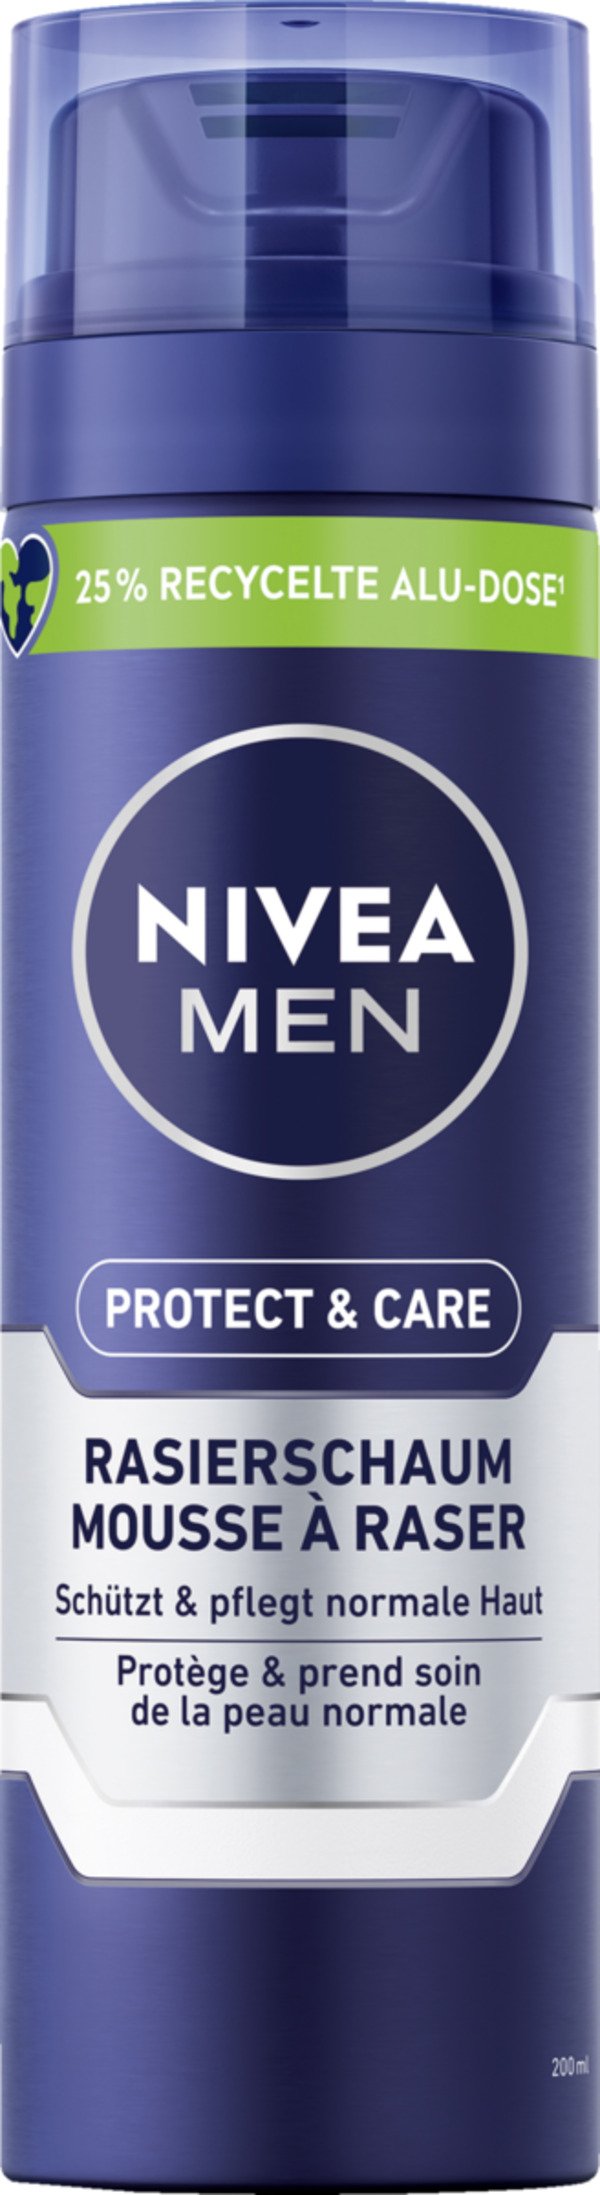 Bild 1 von NIVEA MEN Protect+Care Rasierschaum